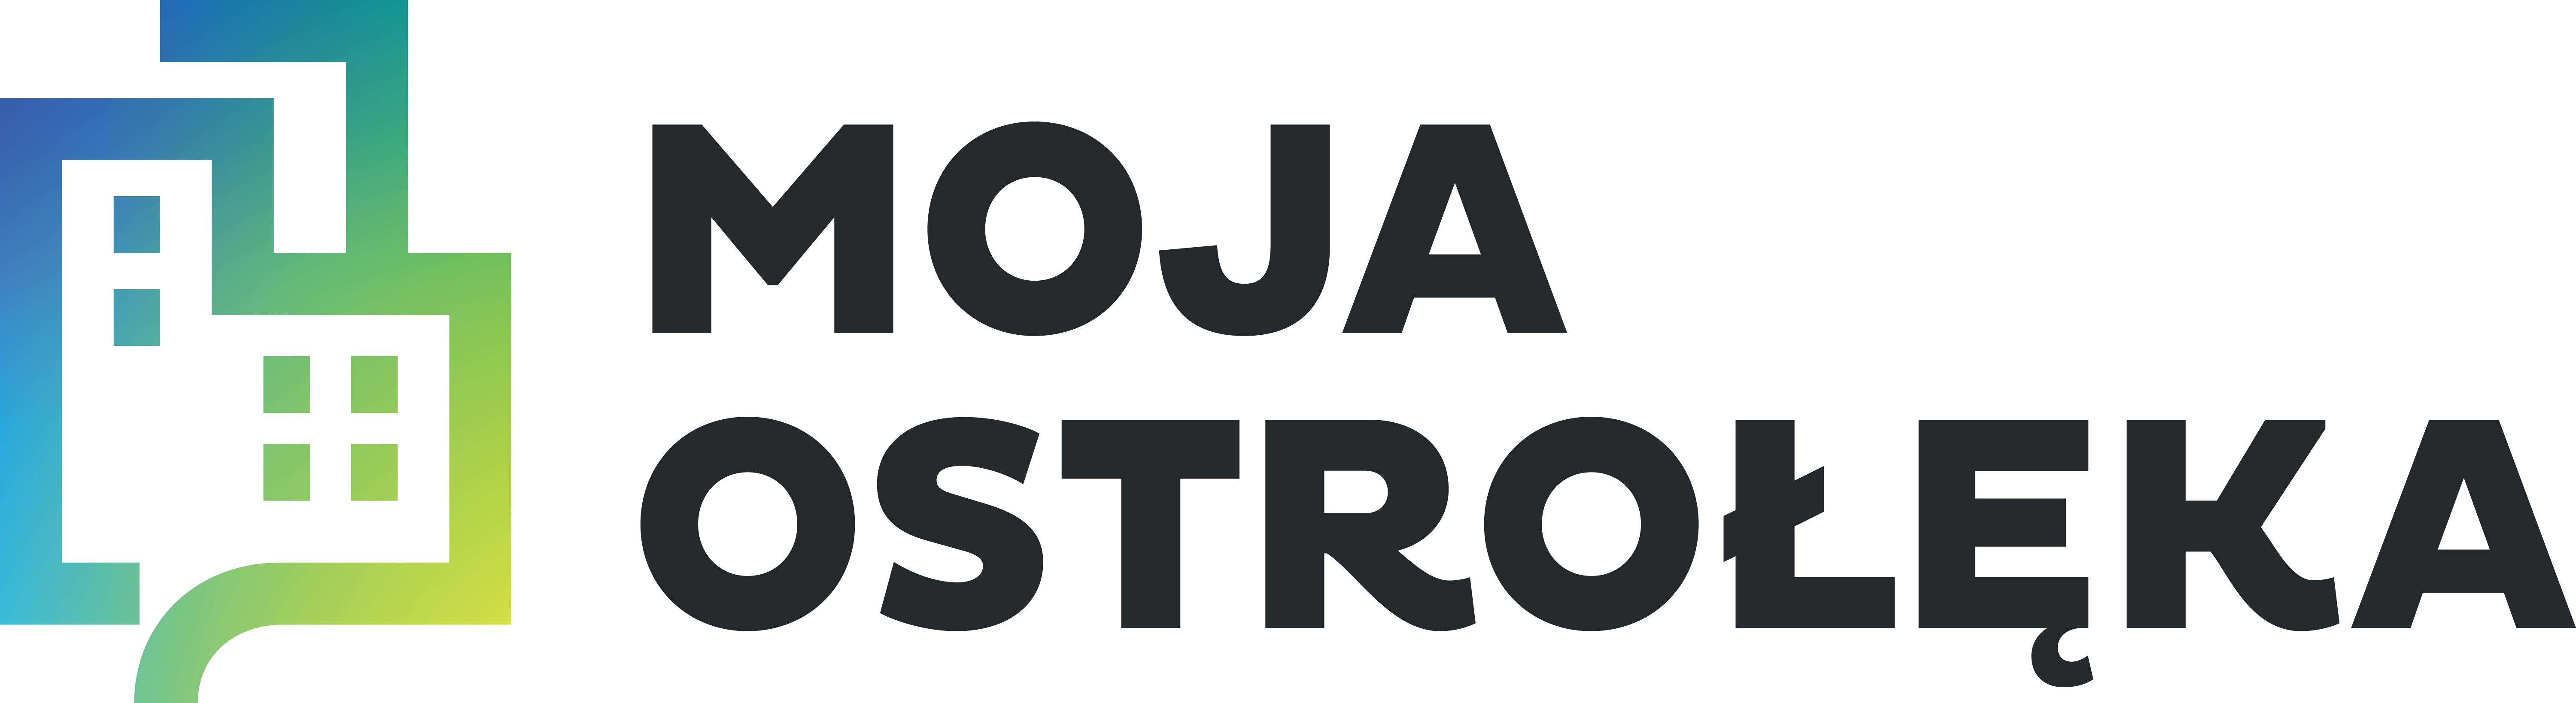 logo Moja Ostrołęka